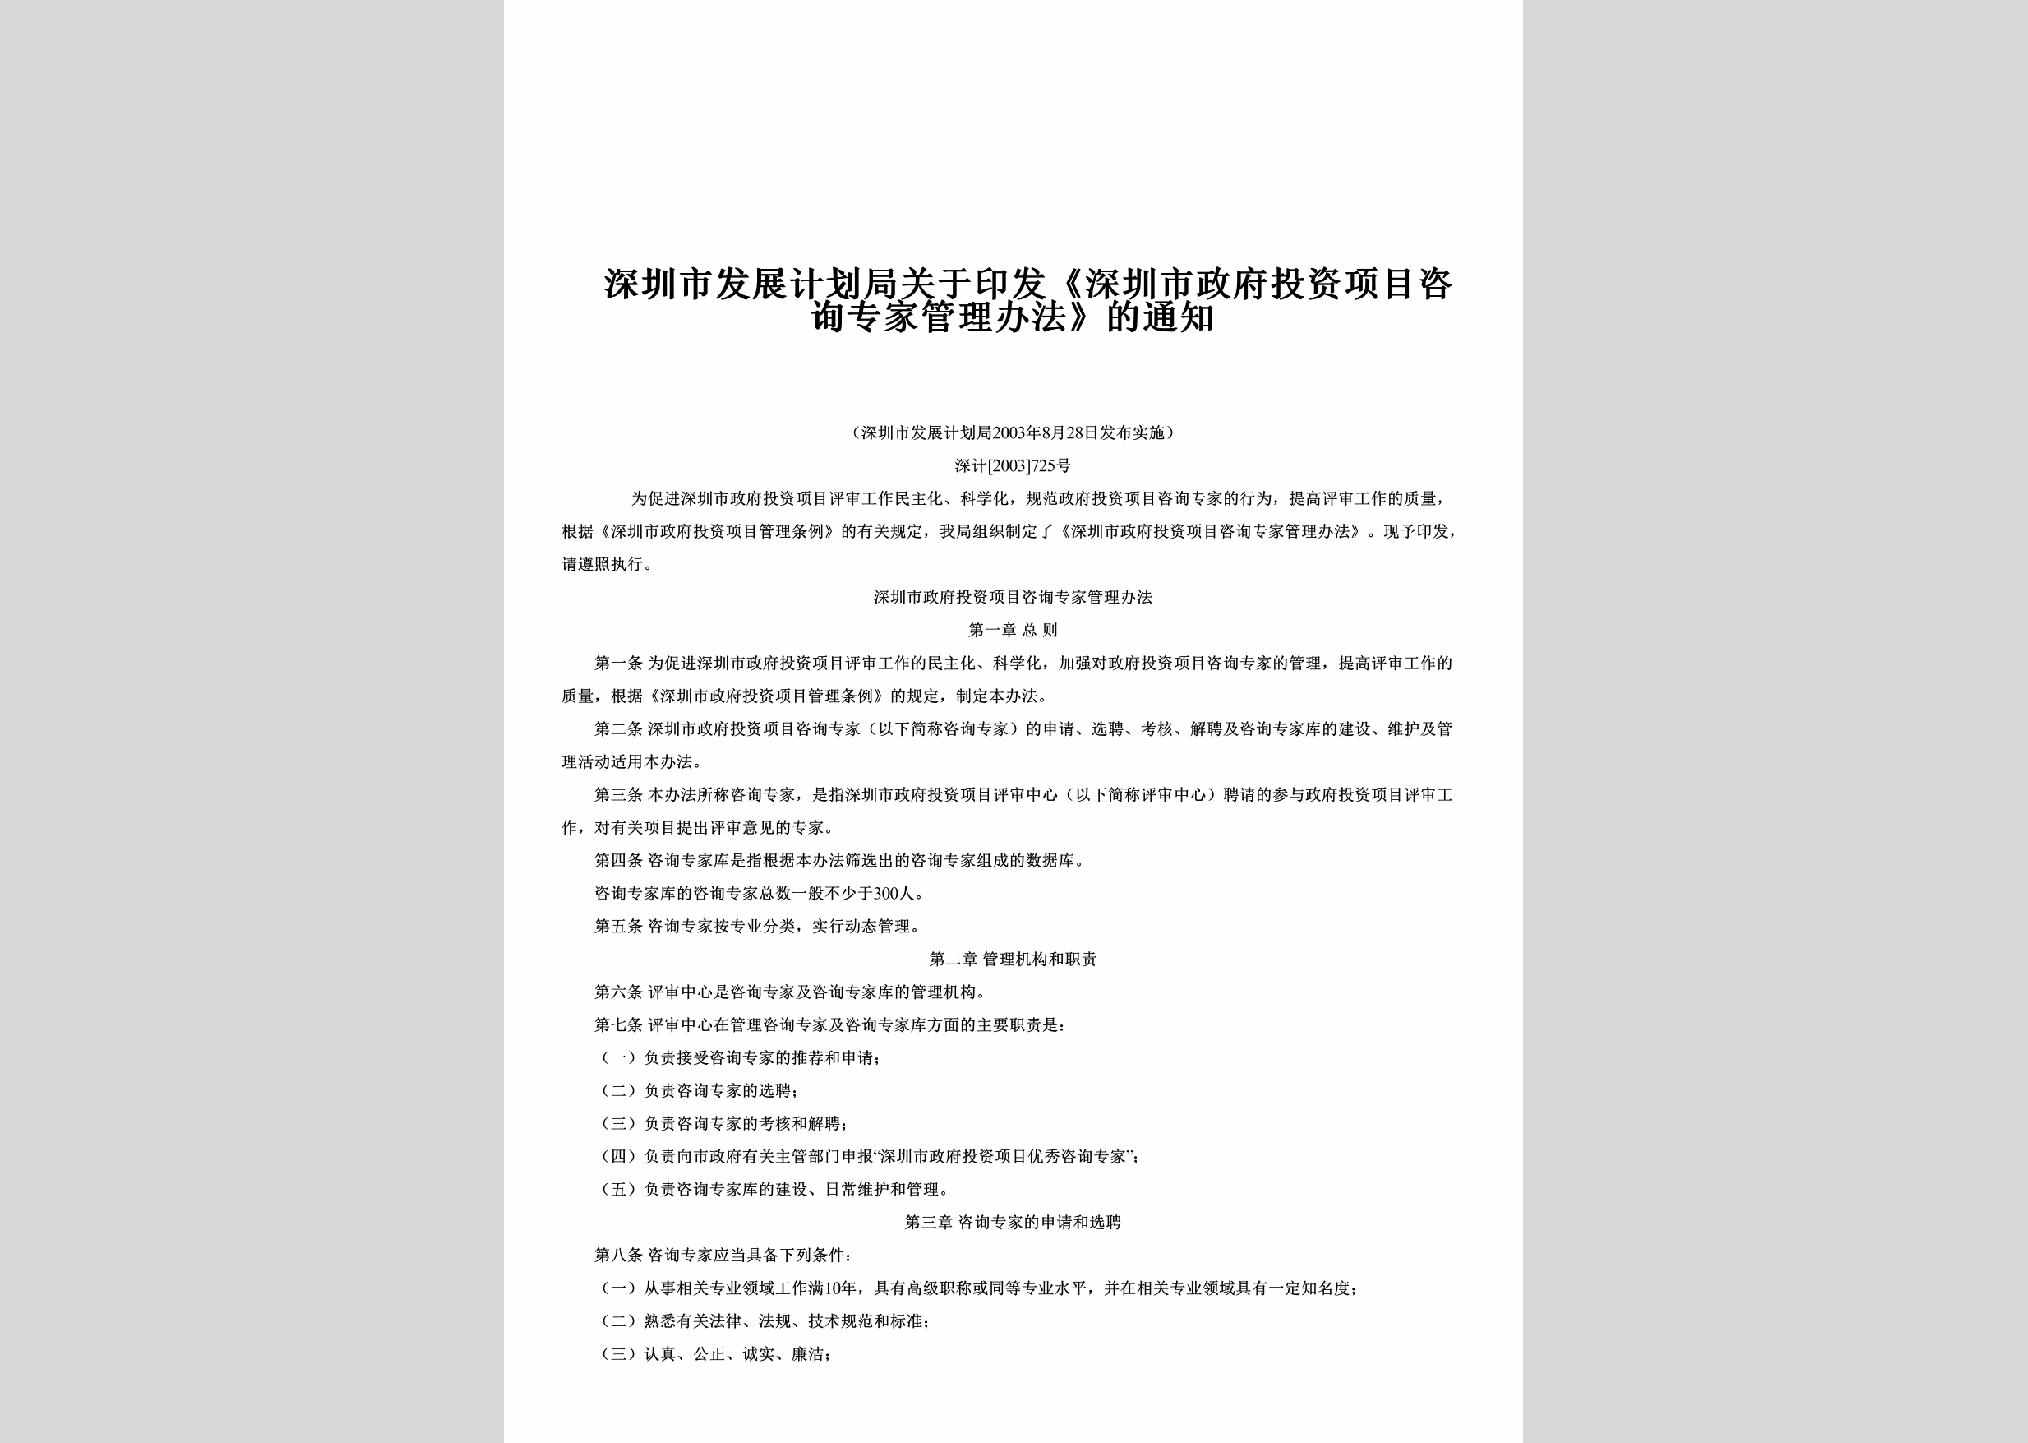 深计[2003]725号：关于印发《深圳市政府投资项目咨询专家管理办法》的通知